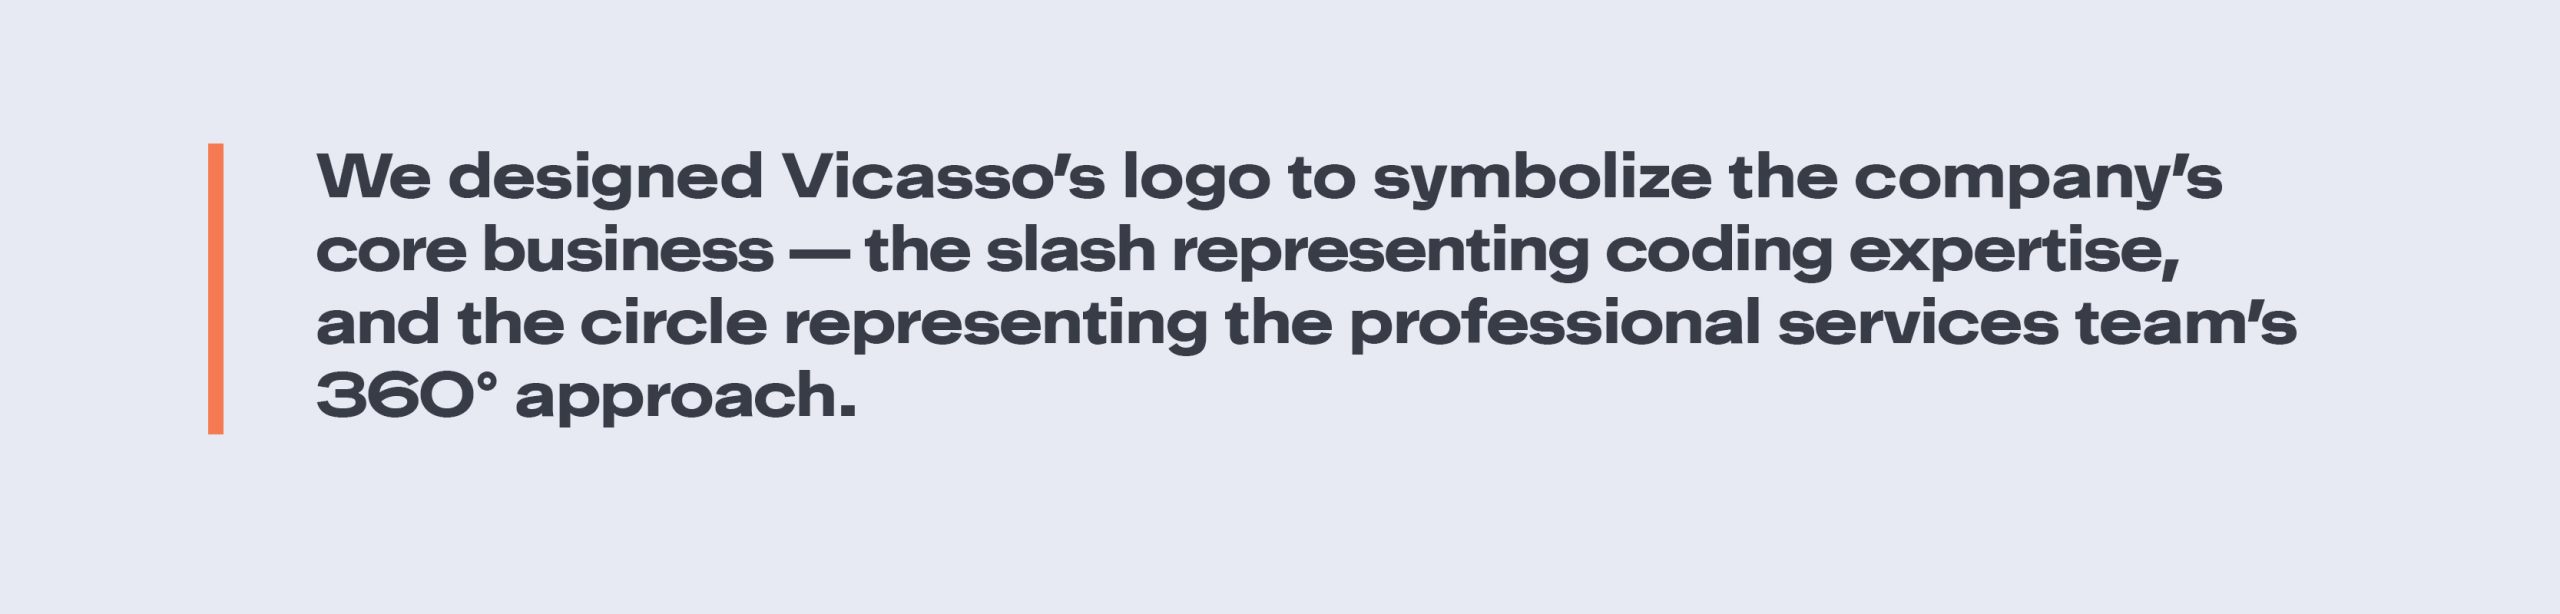 Vicasso logo symbolism